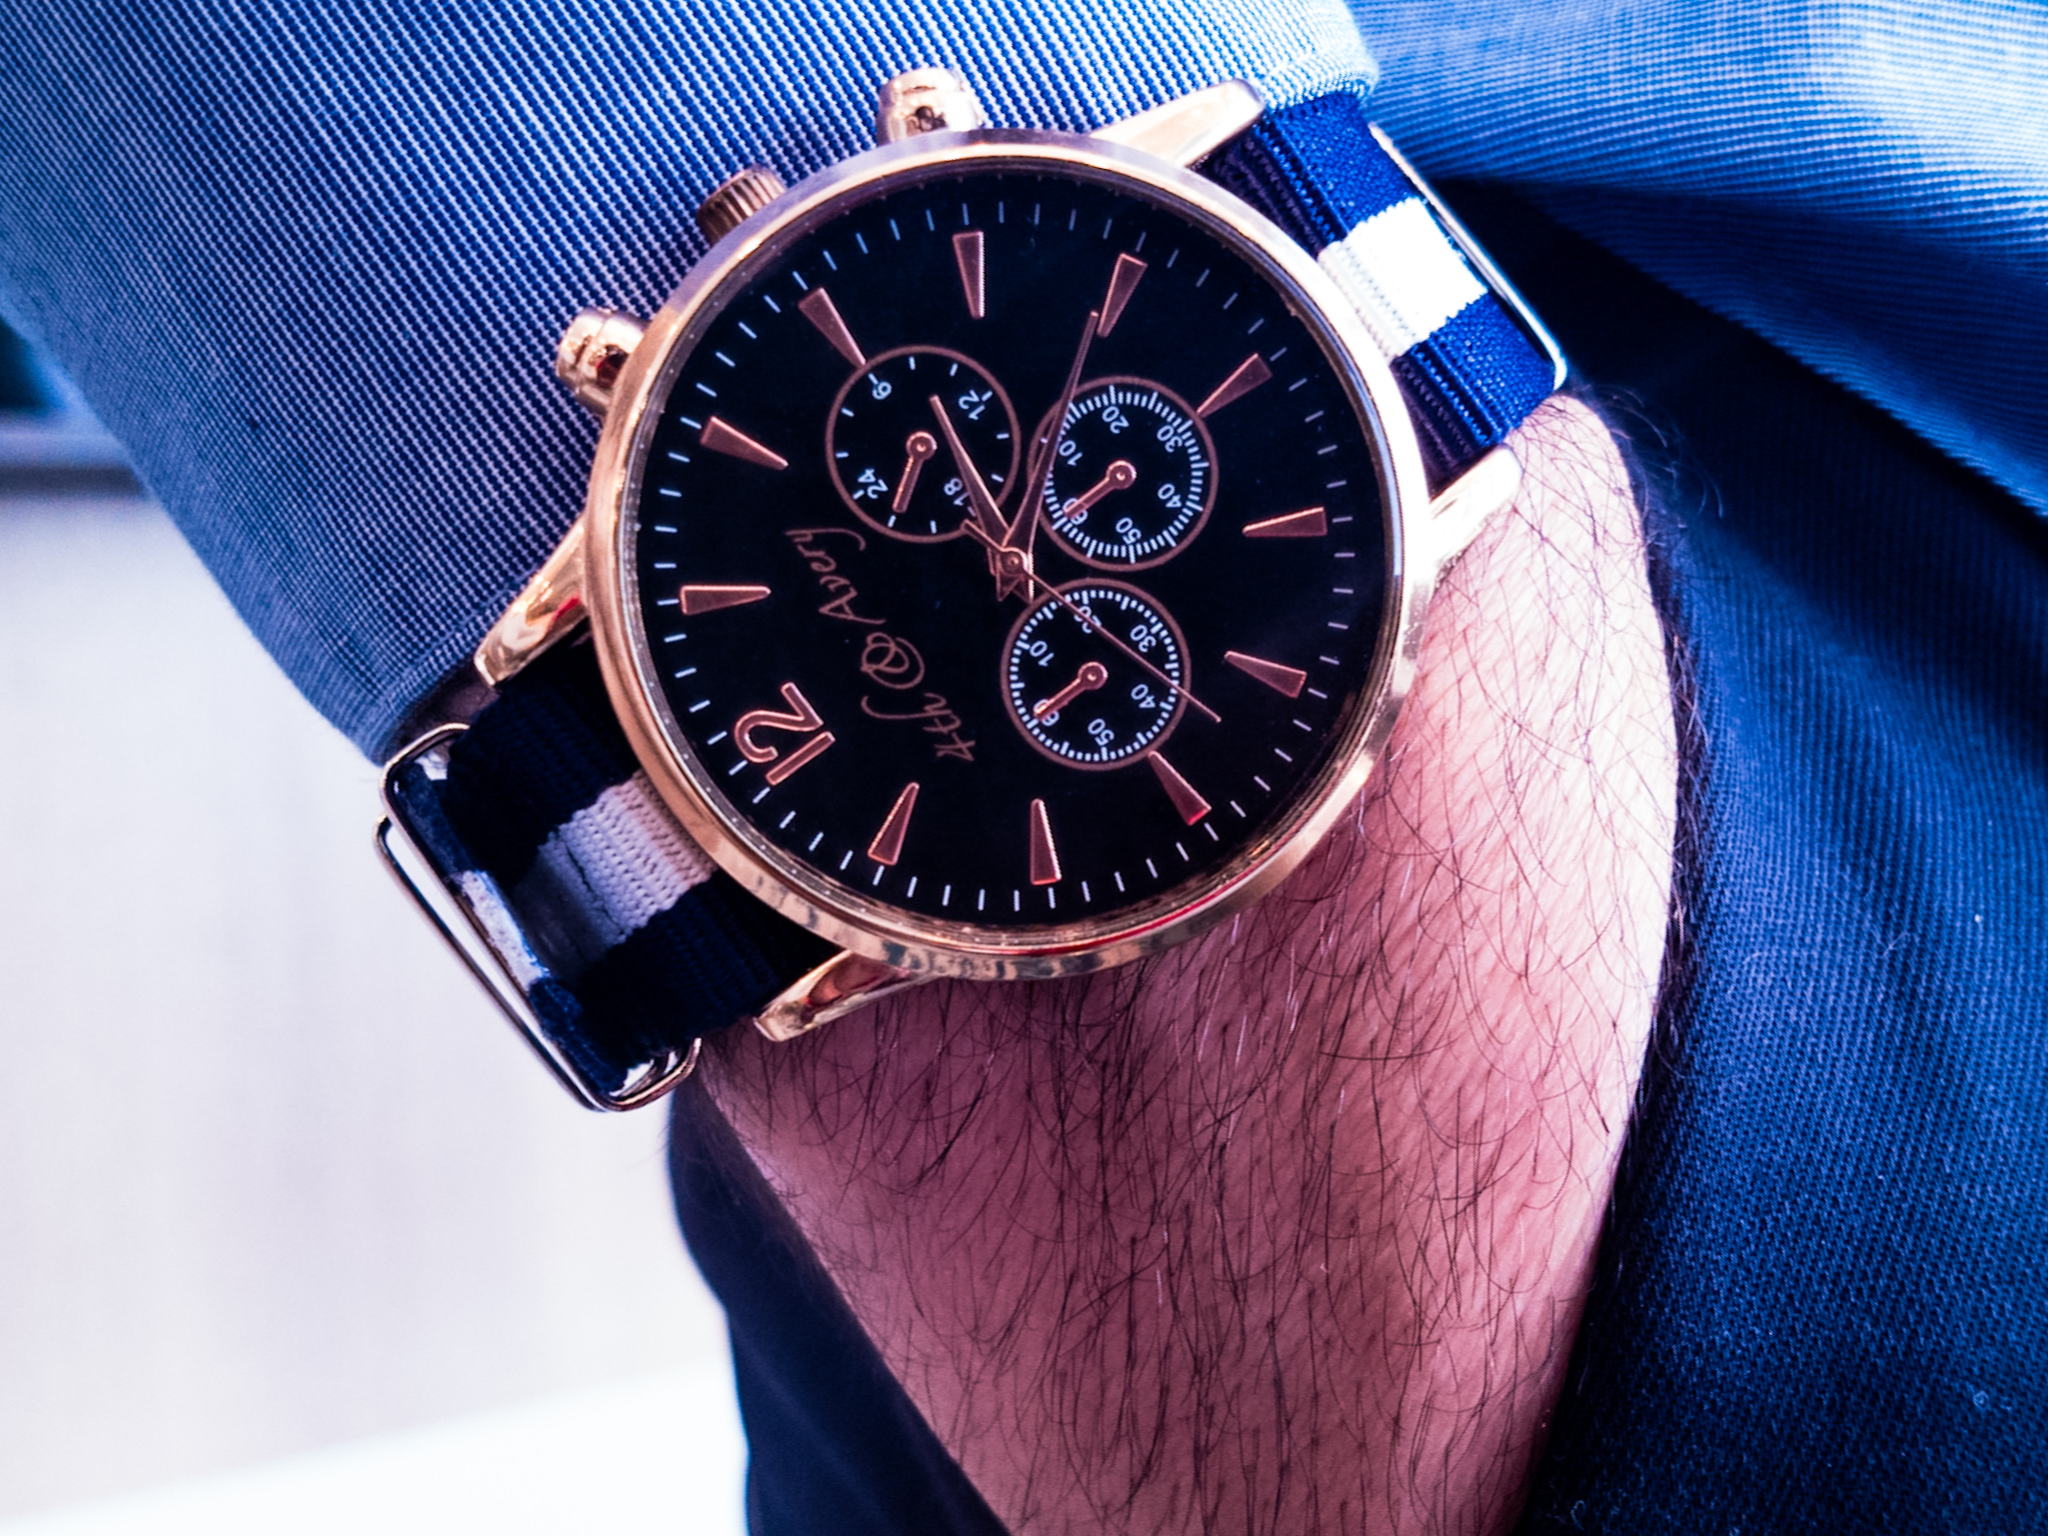 G10 NATO BLUE - Best Minimalist Watches